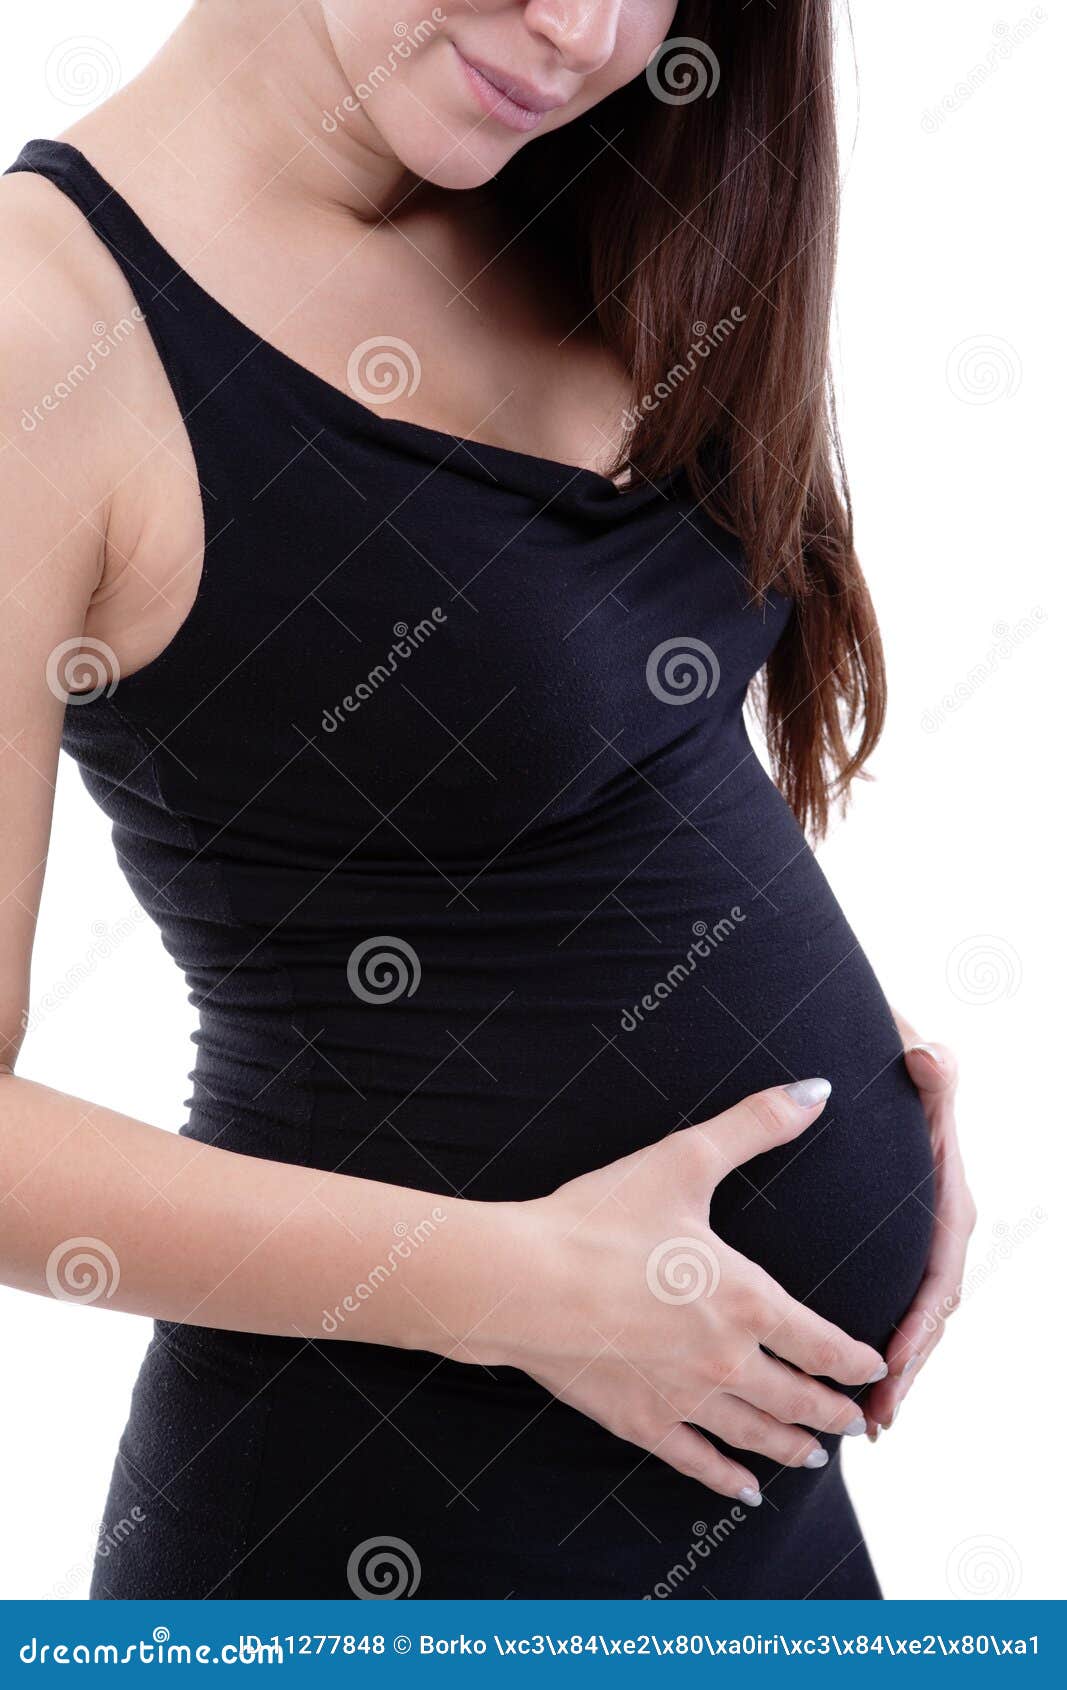 可爱的孕妇 库存照片. 图片 包括有 正横, 诞生, 肚脐, 父母亲, 家庭, 女性, 里面, 查找, 愉快 - 33913004